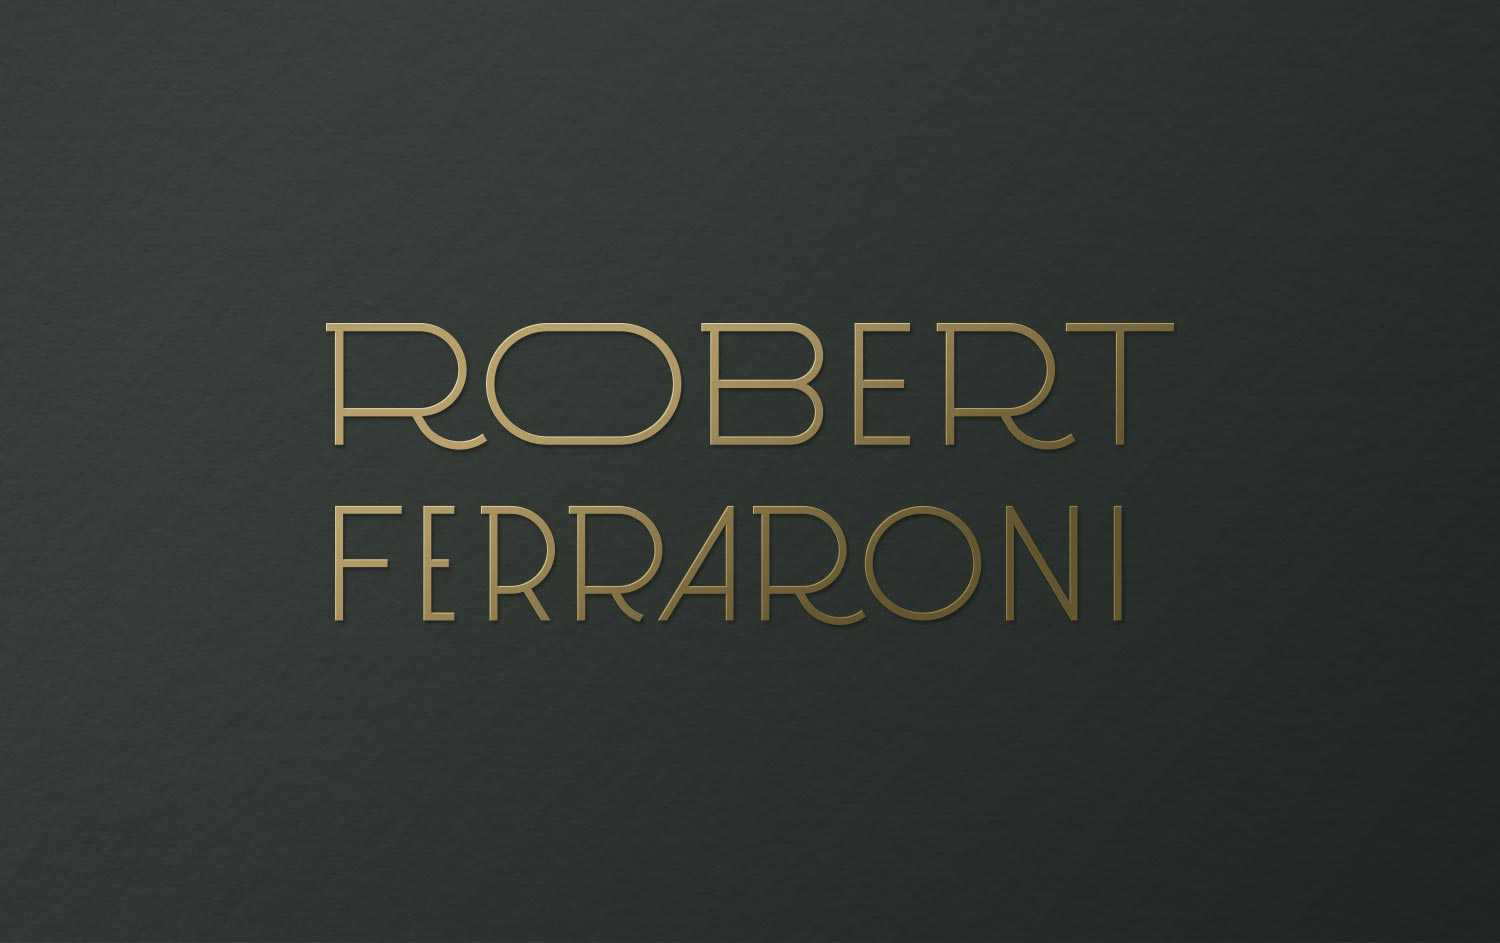 Robert Ferraroni Logo Design